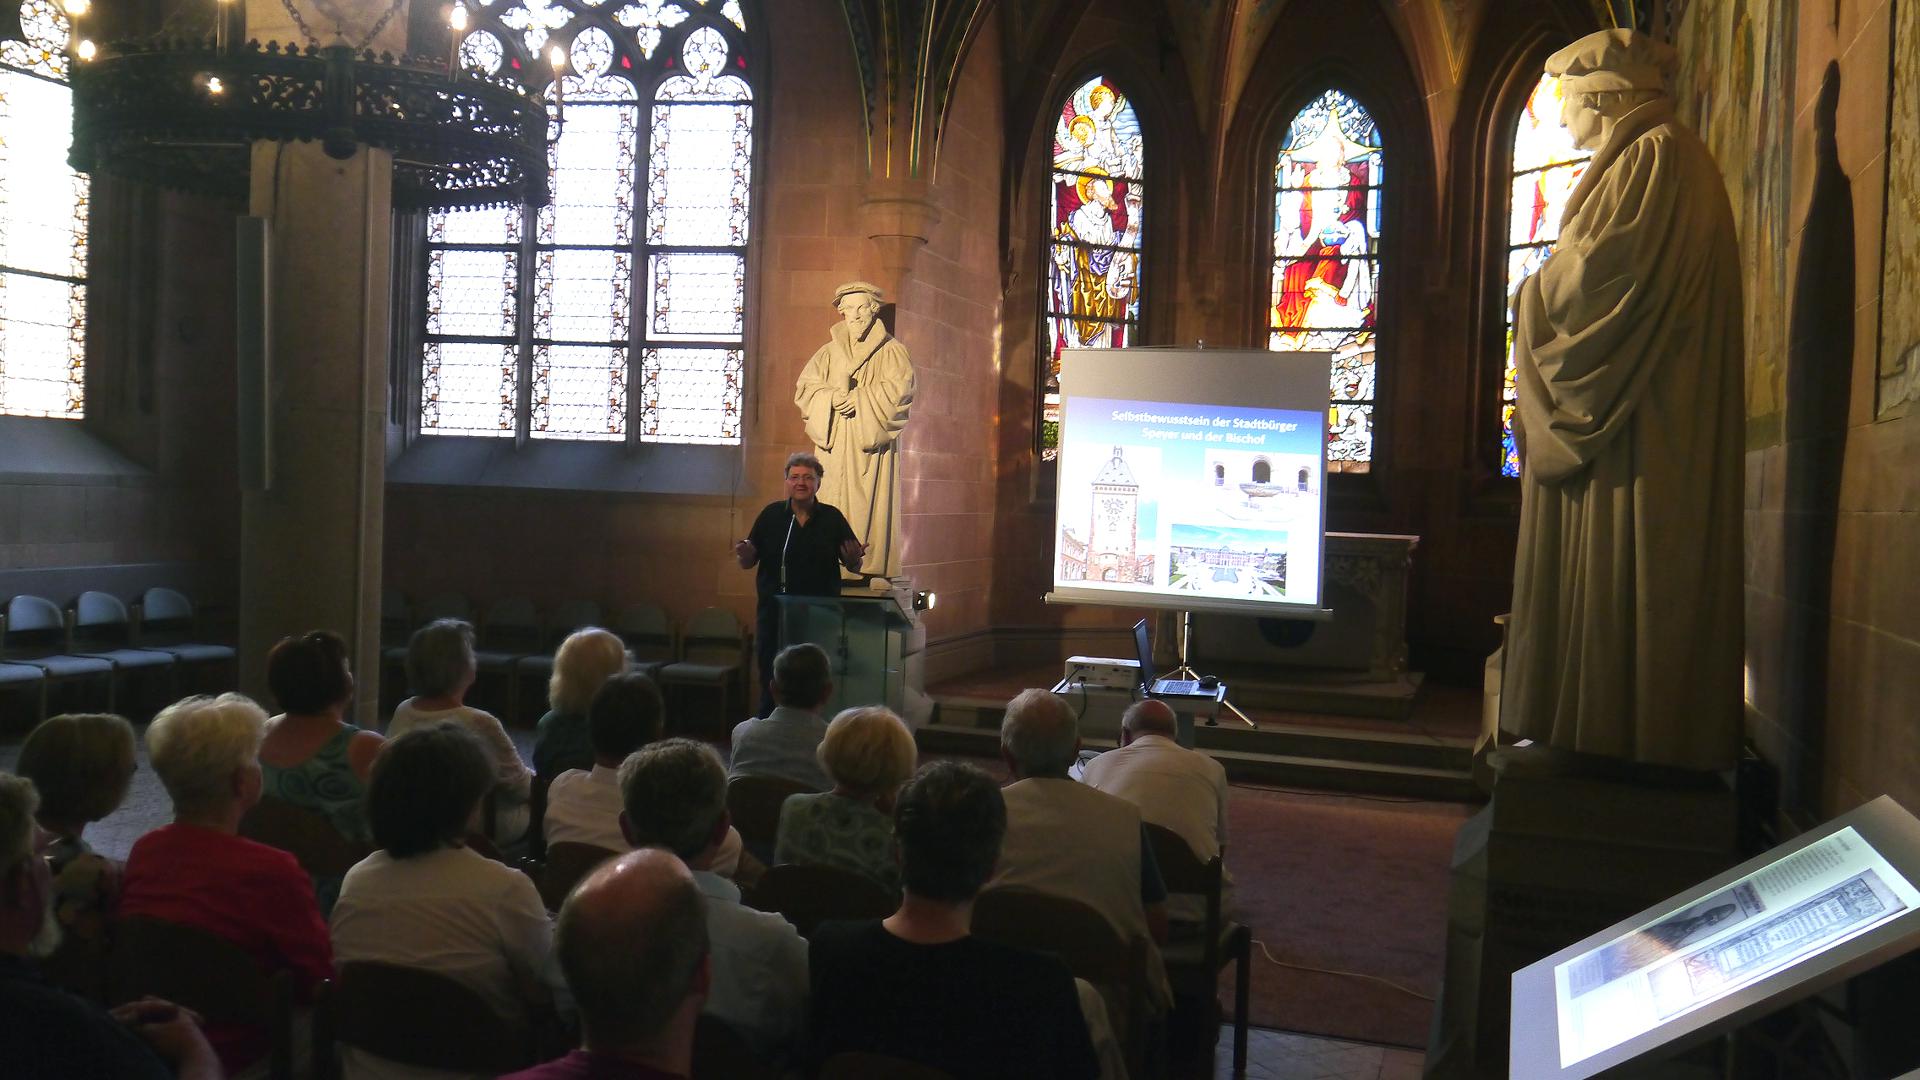 Eine beleuchtete Leinwand steht in einem Kirchengebäude. Ein Mann spricht zu einem Publikum, das von hinten zu sehen ist.